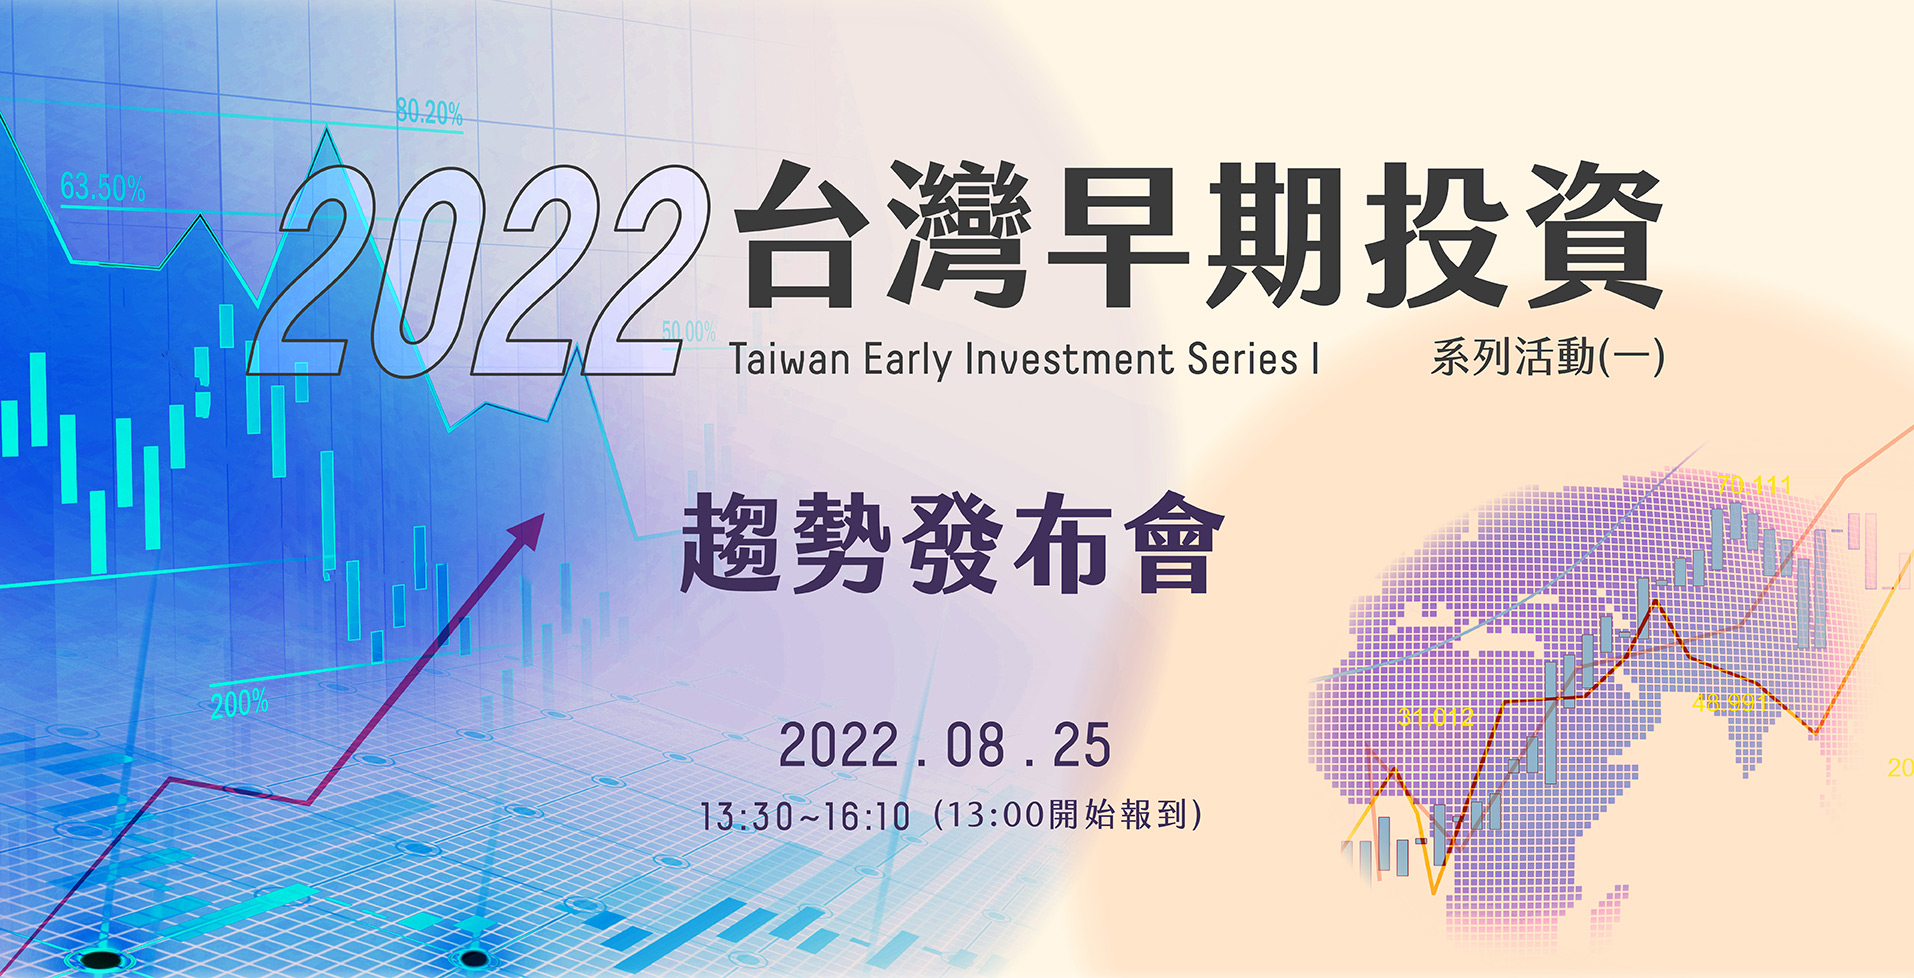 2022早期投資系列活動(一)趨勢發布會